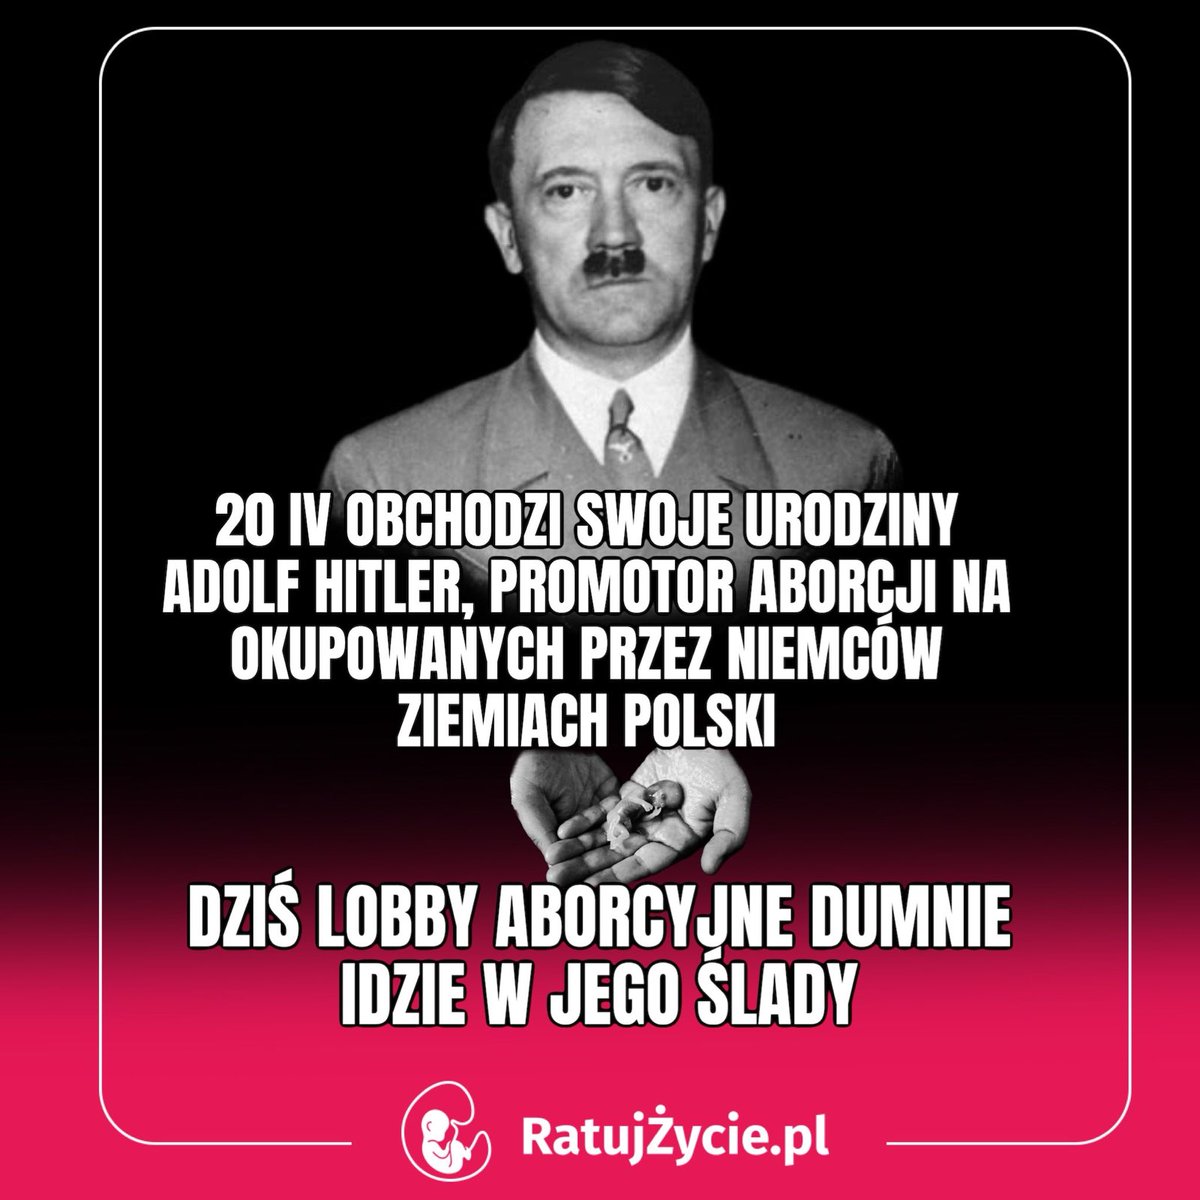 Precz z aborcją! Precz z dziedzictwem nazizmu!

#ratujzyciepl #ratujzycie #prolife #antyabo #aborcjatonazizm